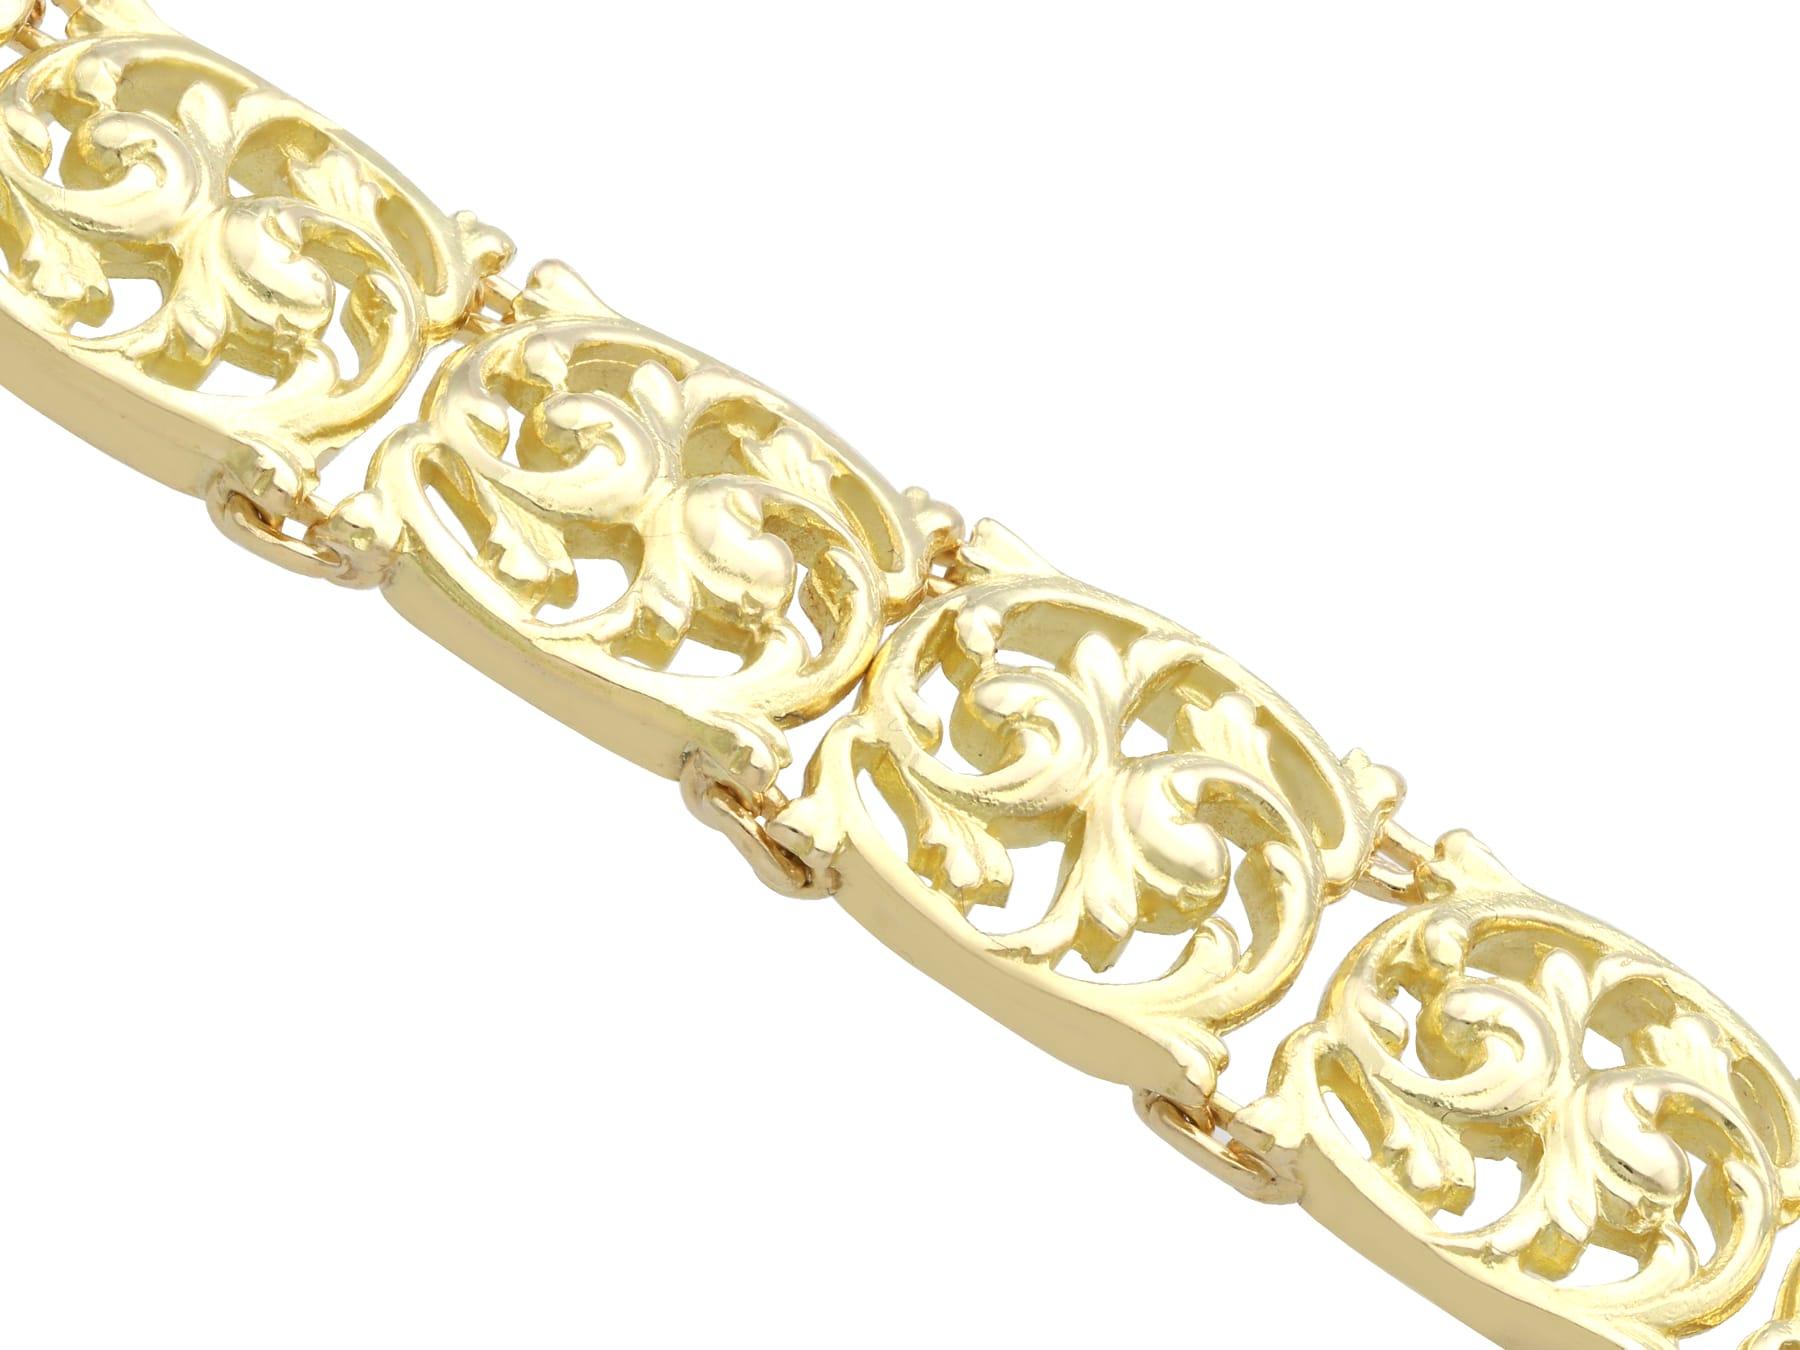 Antique Art Nouveau 18 Karat Yellow Gold Bracelet For Sale 2